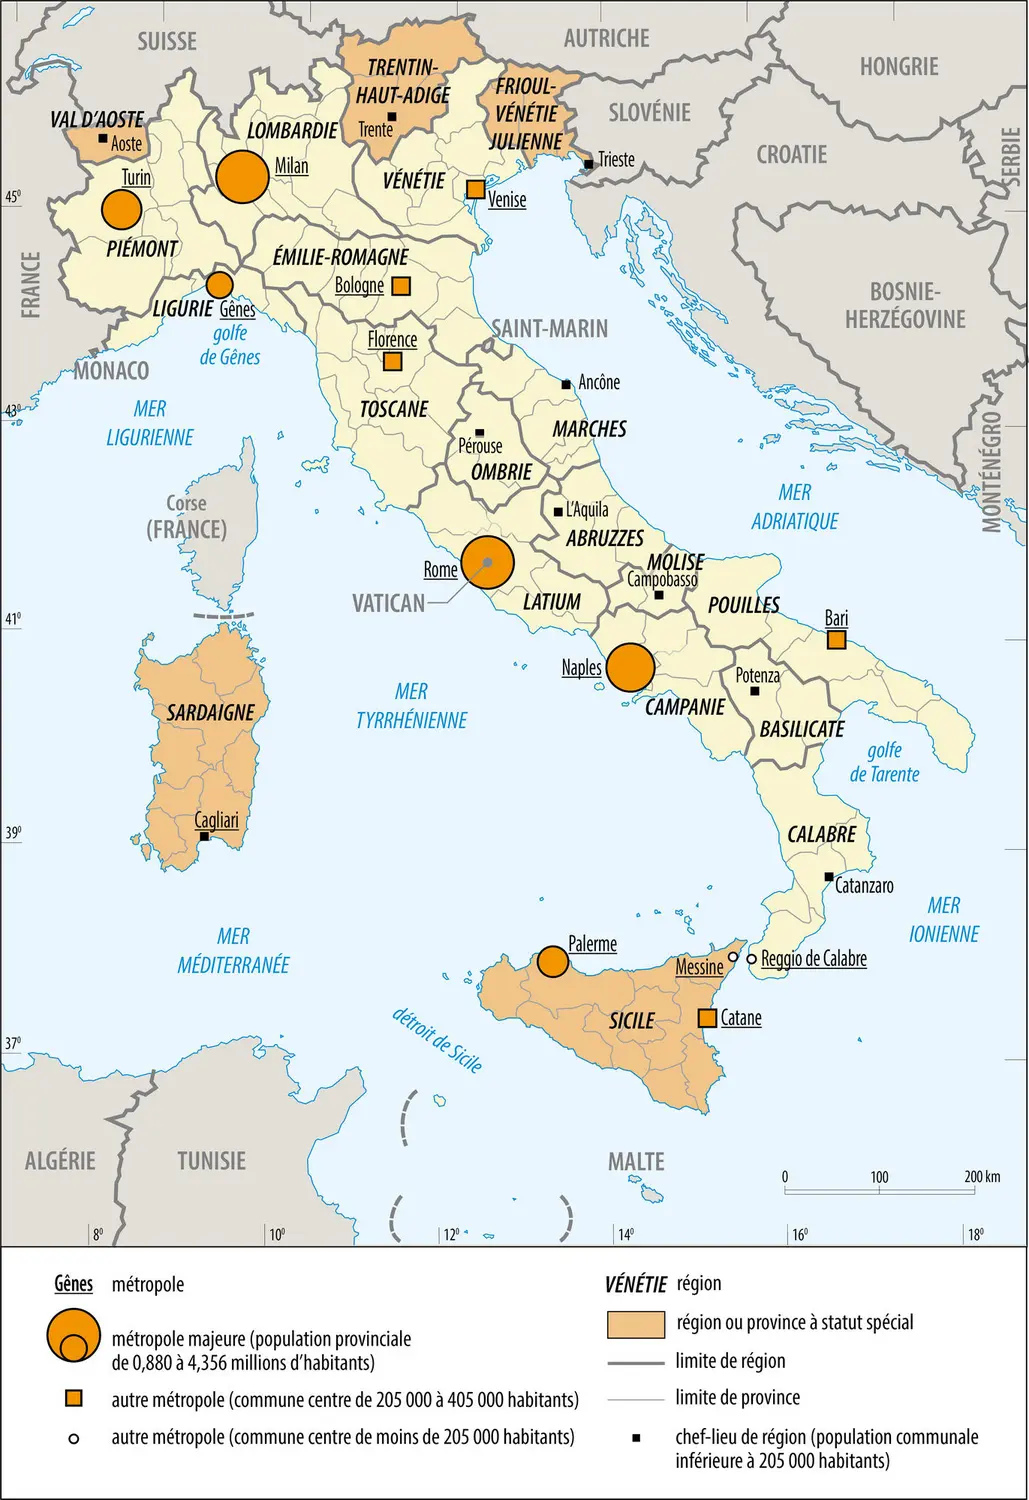 Italie : régions et métropoles